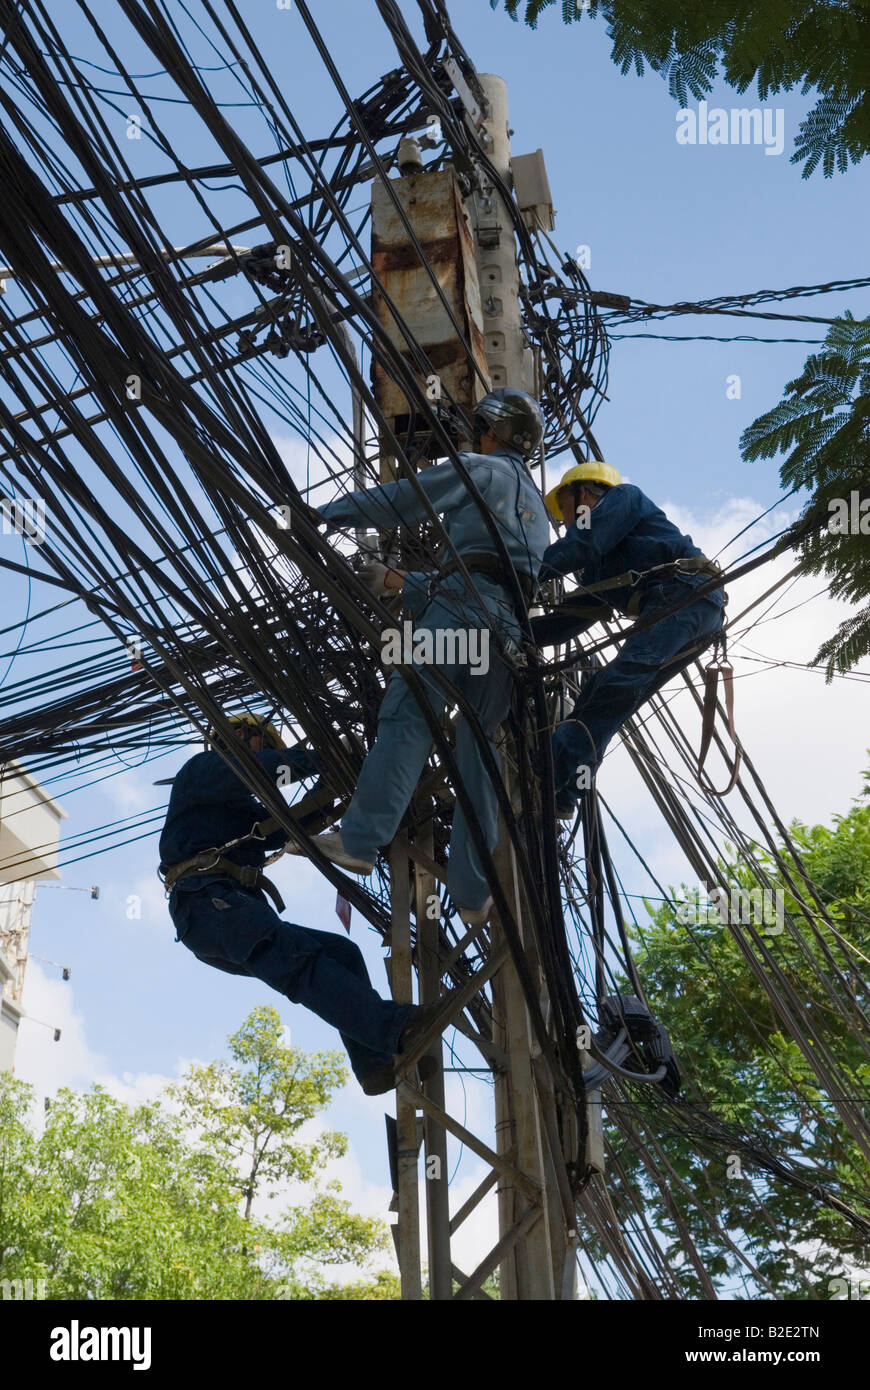 Une équipe de maintenance de la ligne d'alimentation sur un poteau haut travail sur le complexe enchevêtrement de fils électriques d'alimentation que Ho Chi Minh Ville, Vietnam Banque D'Images